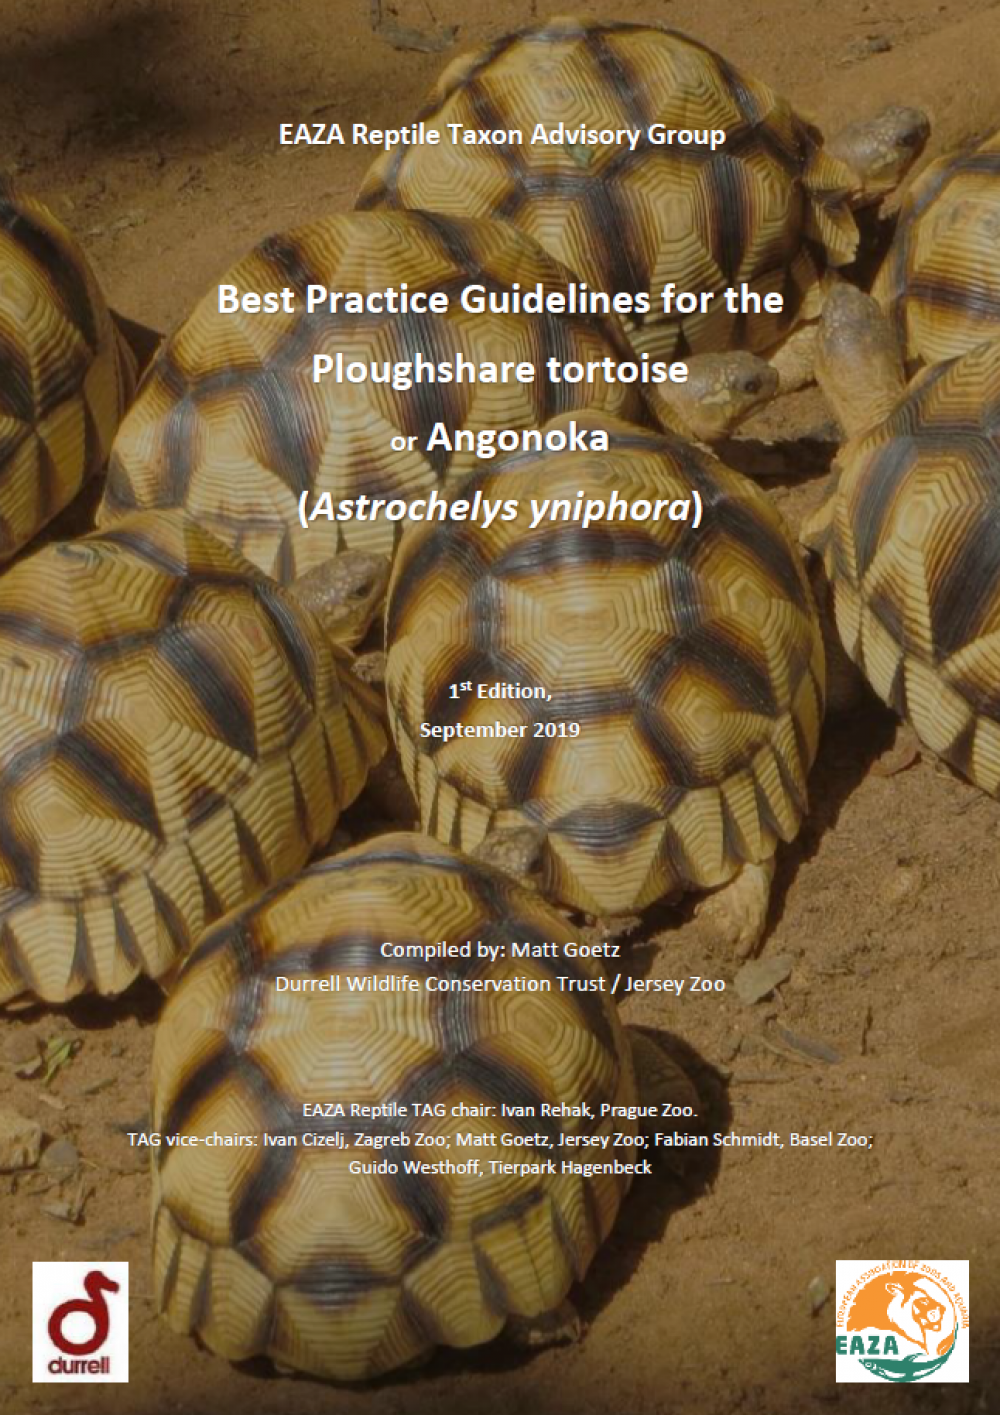 Ploughshare tortoise BPG